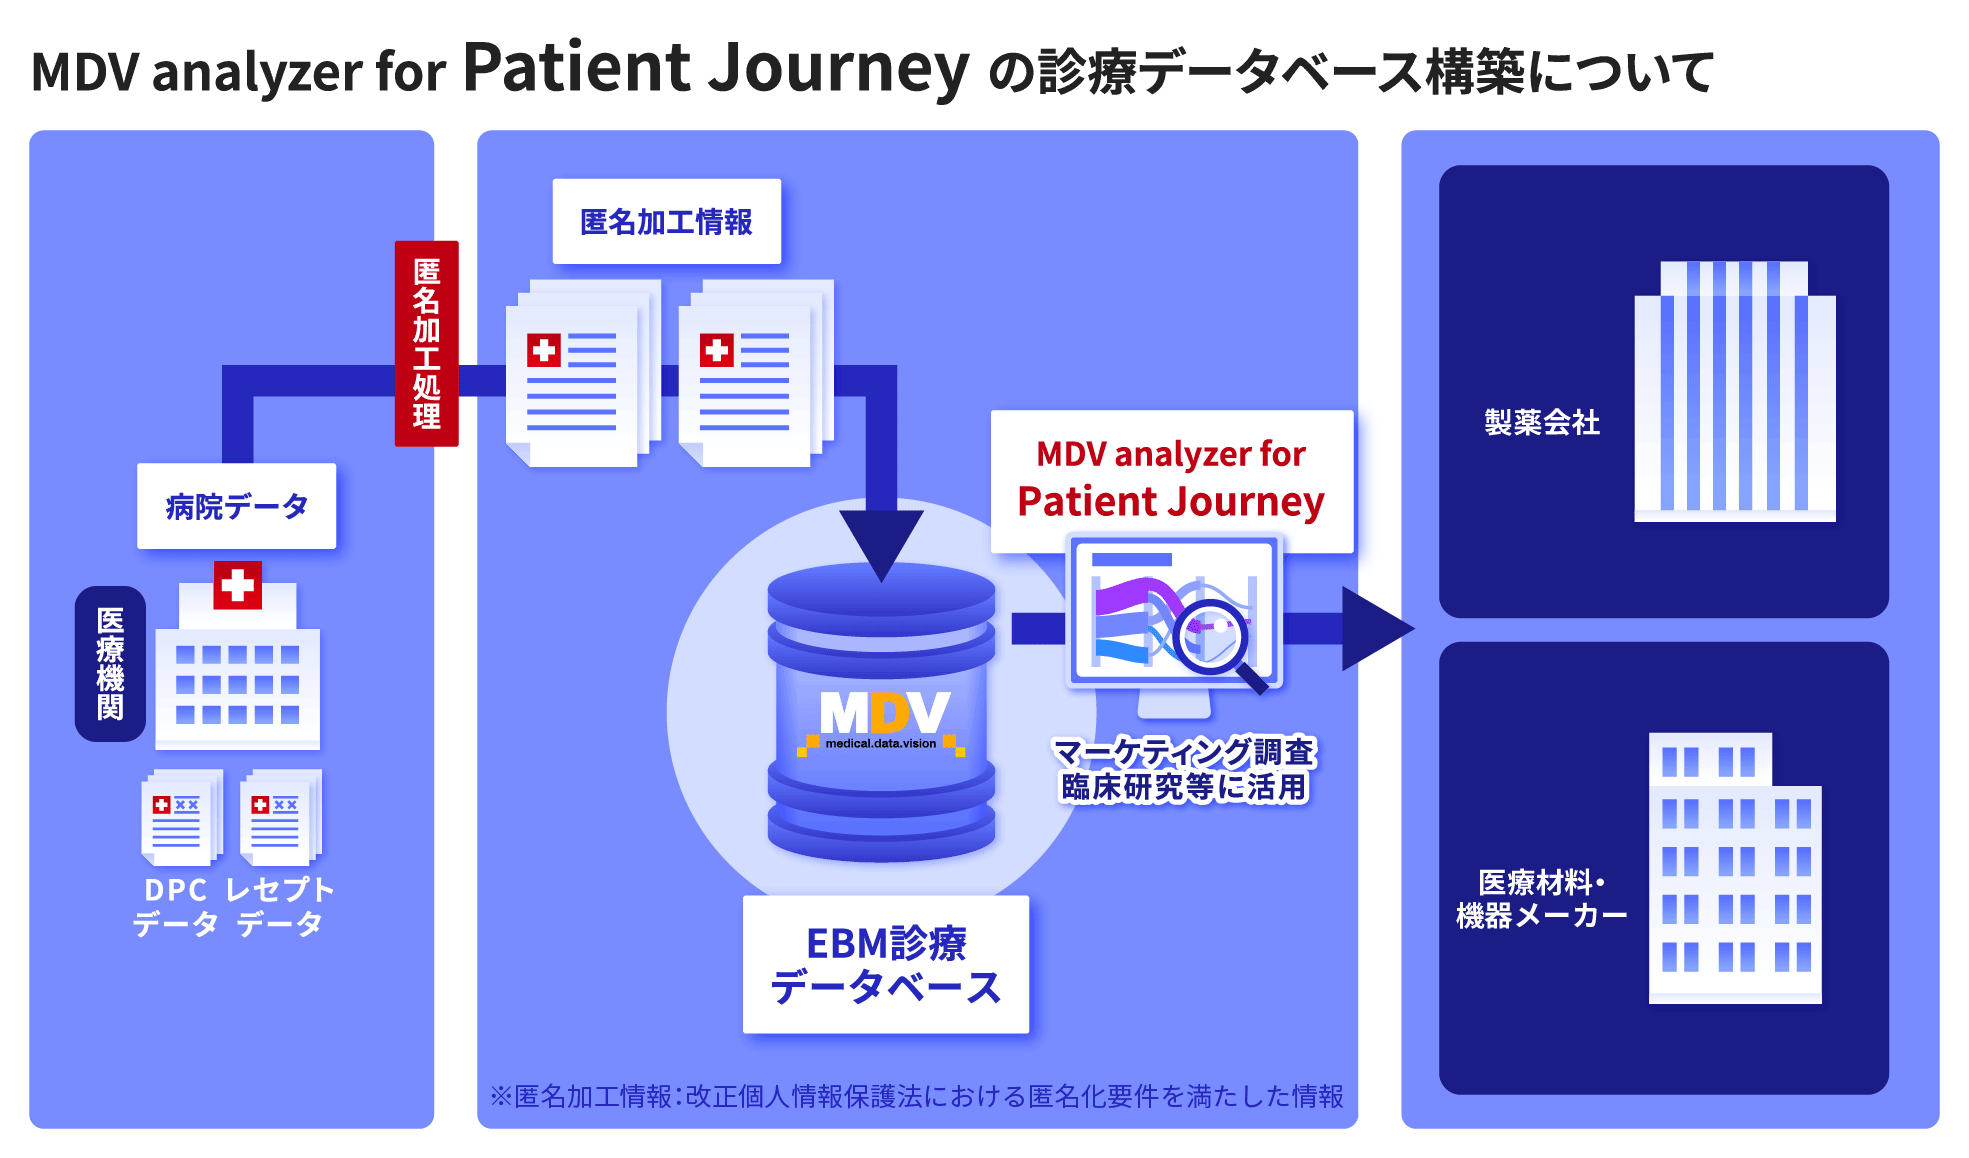 EBM診療データベースイラストMDV analyzer for Patient Journey版